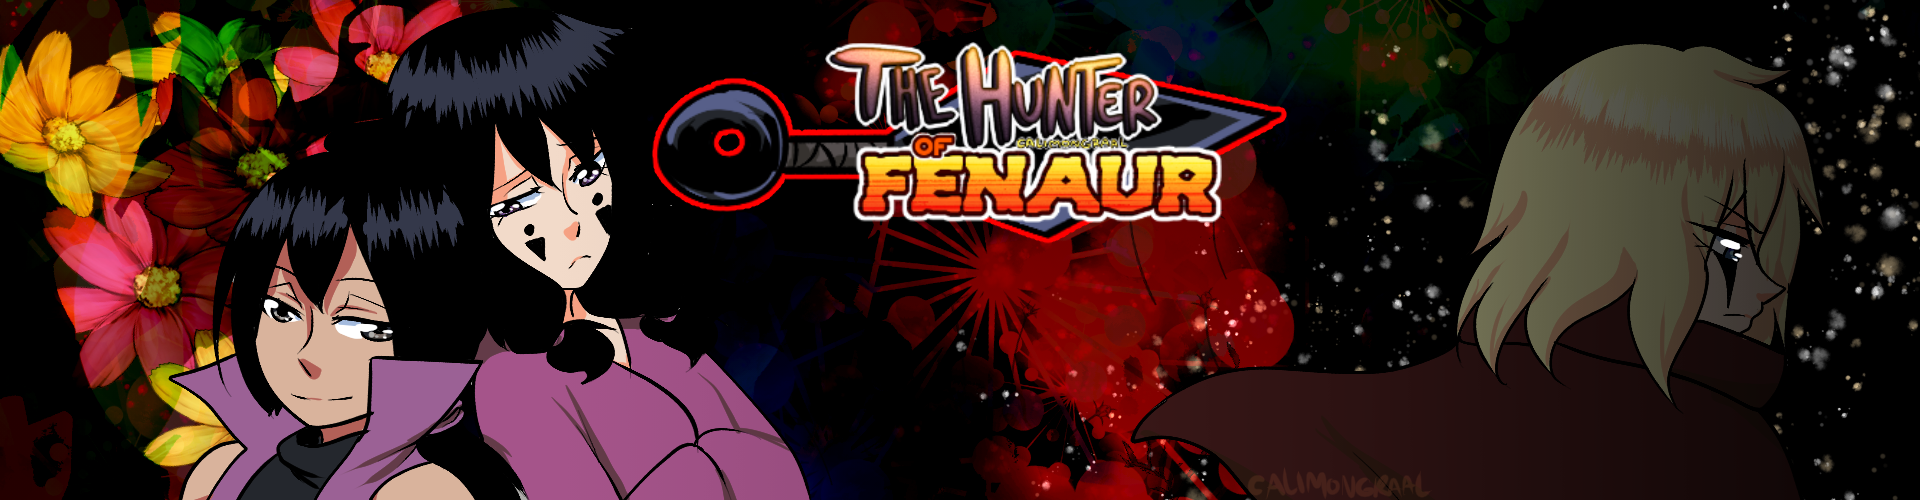 The Hunter of Fenaur banner